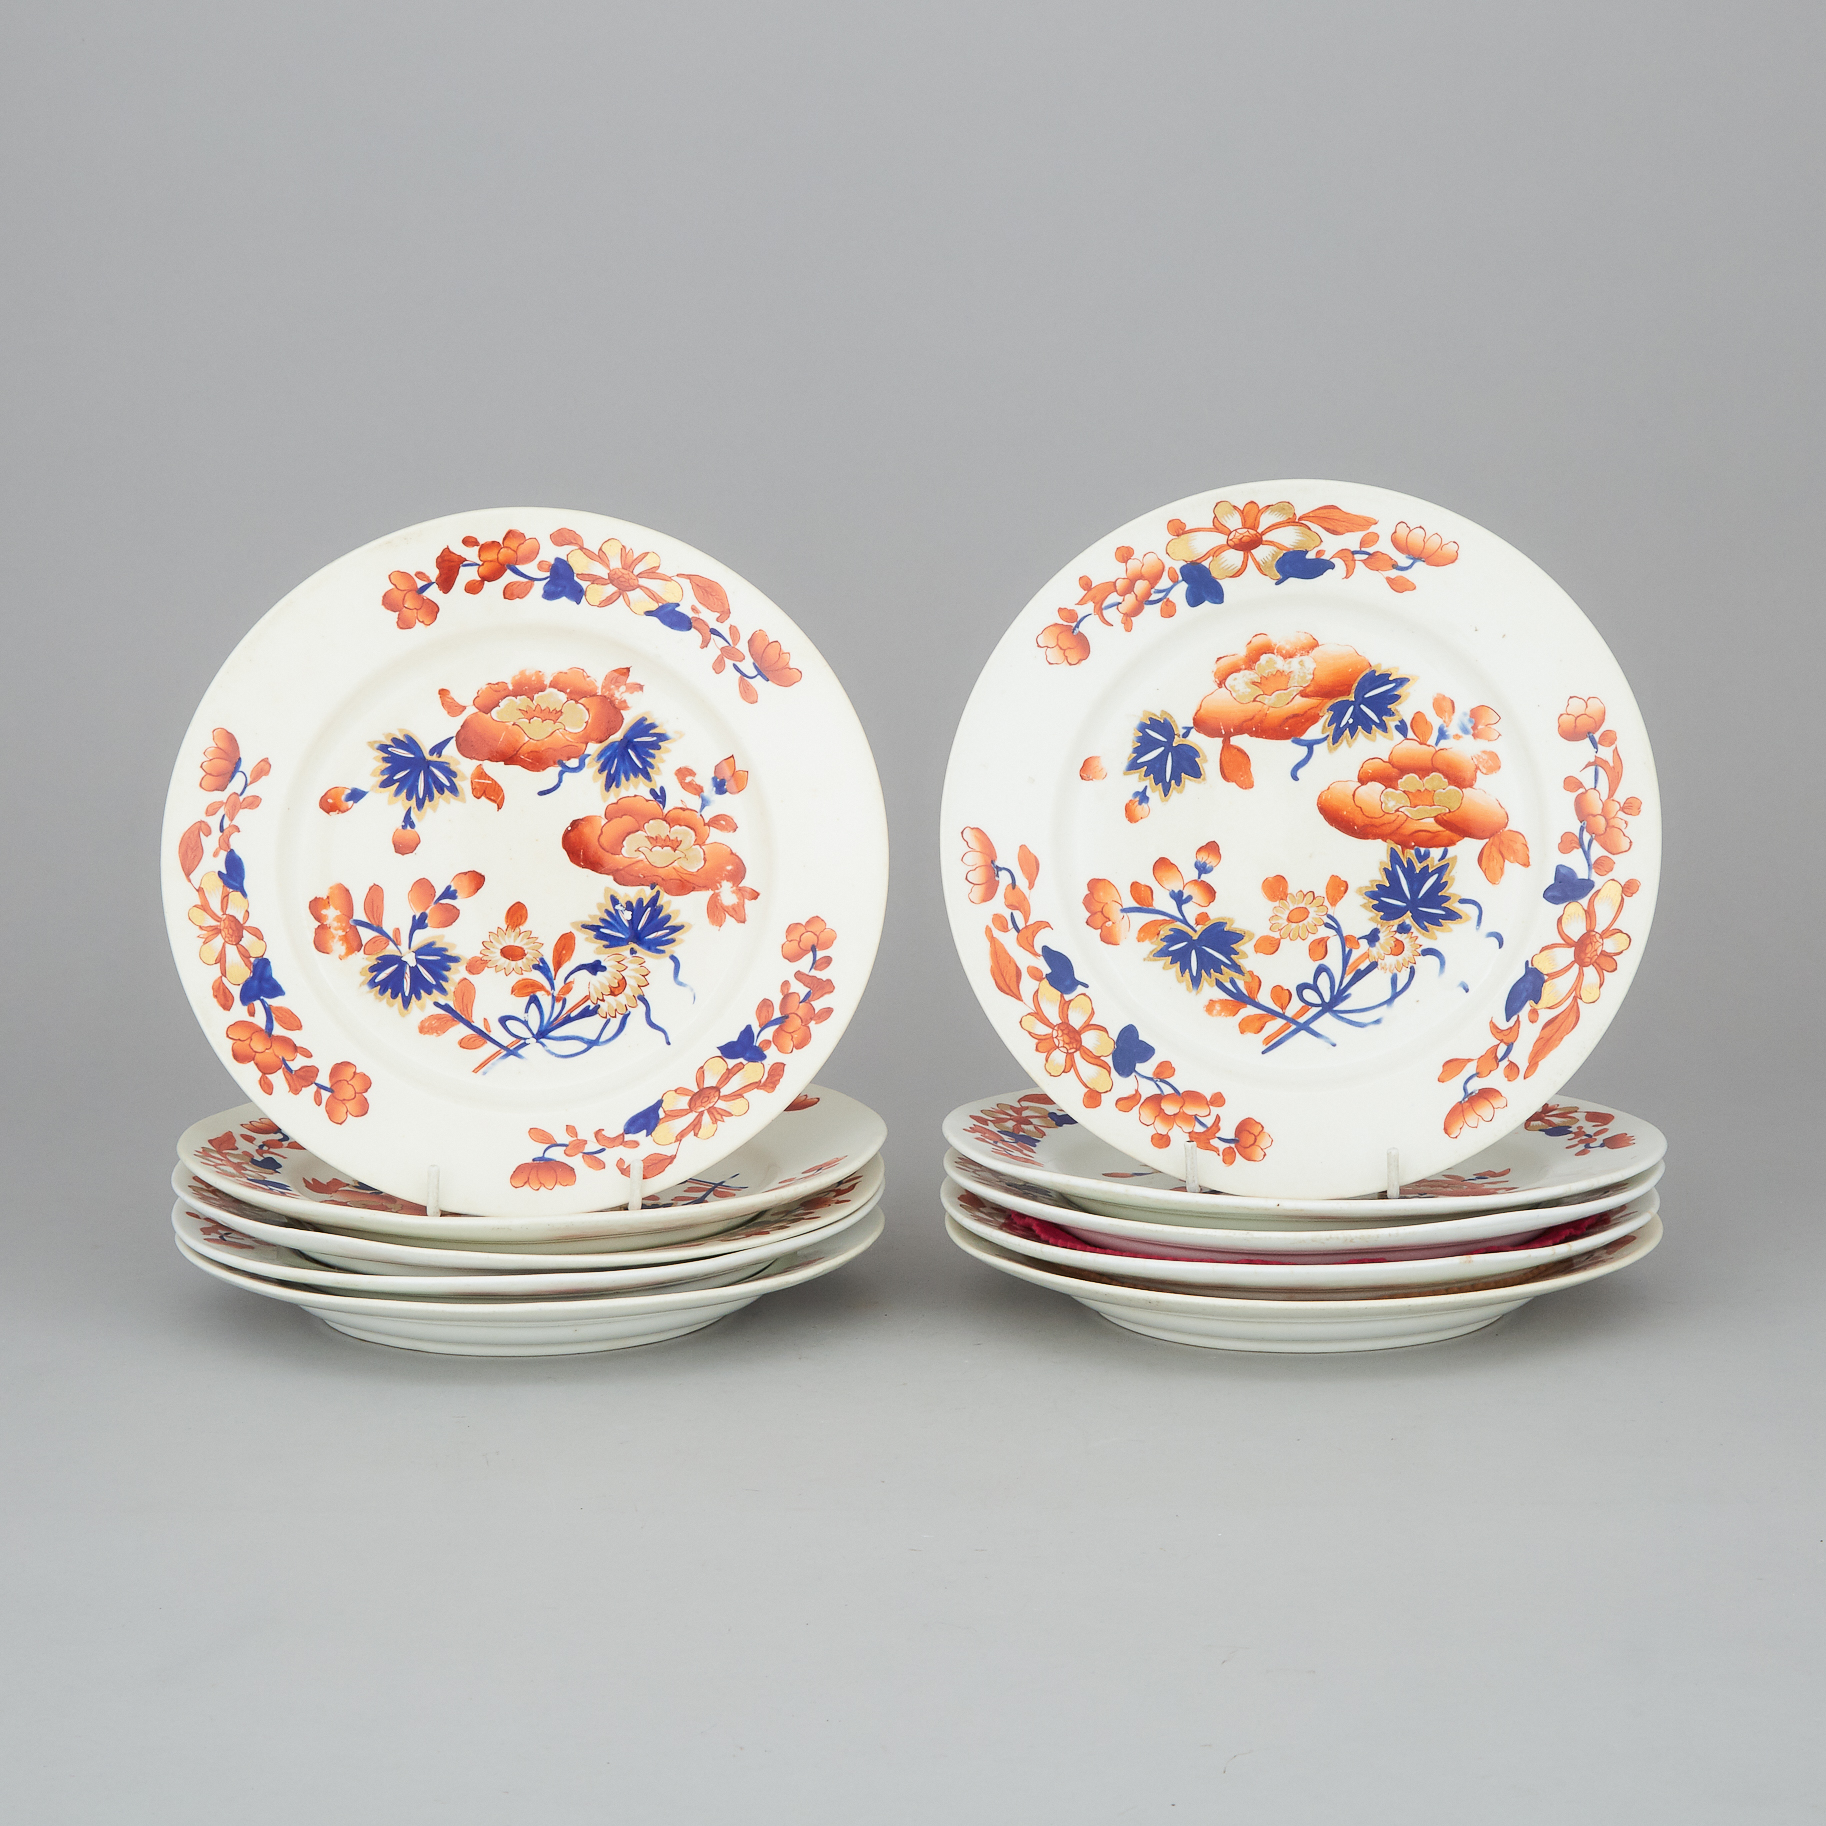 Ten Derby Japan Pattern Plates, c.1820